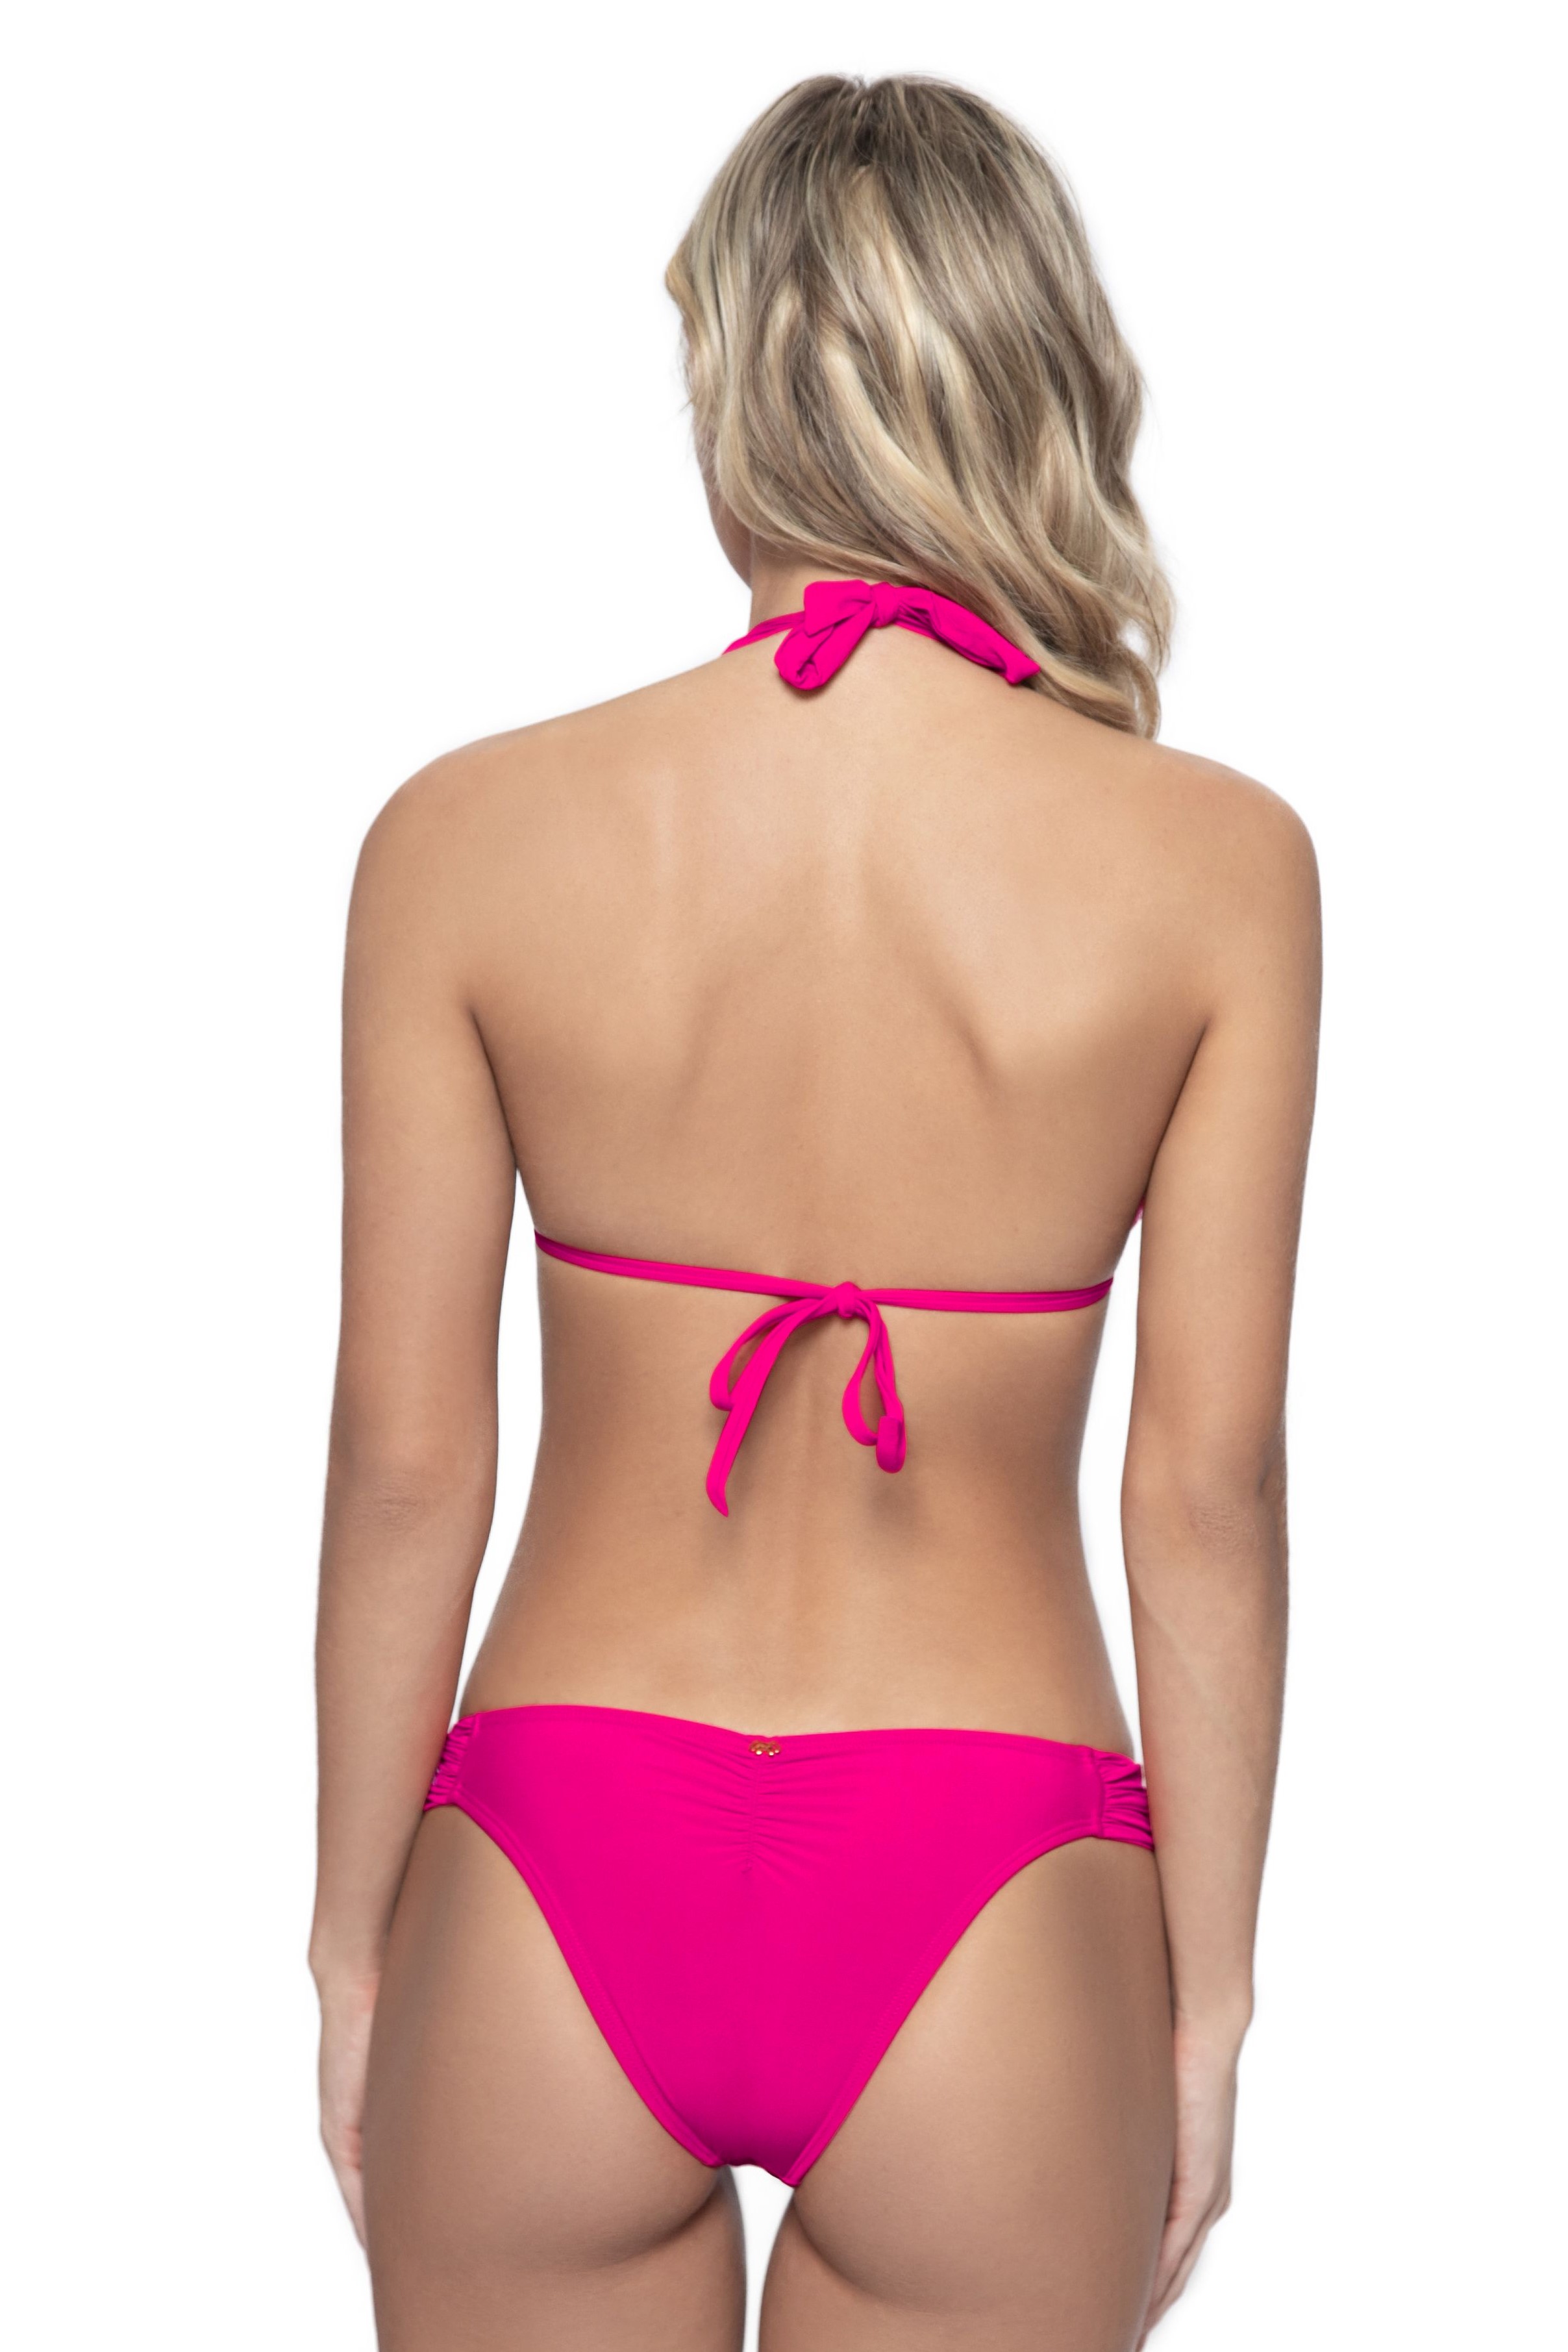 Pilyq Swim Cosmo Pink Lace Halter Bikini 